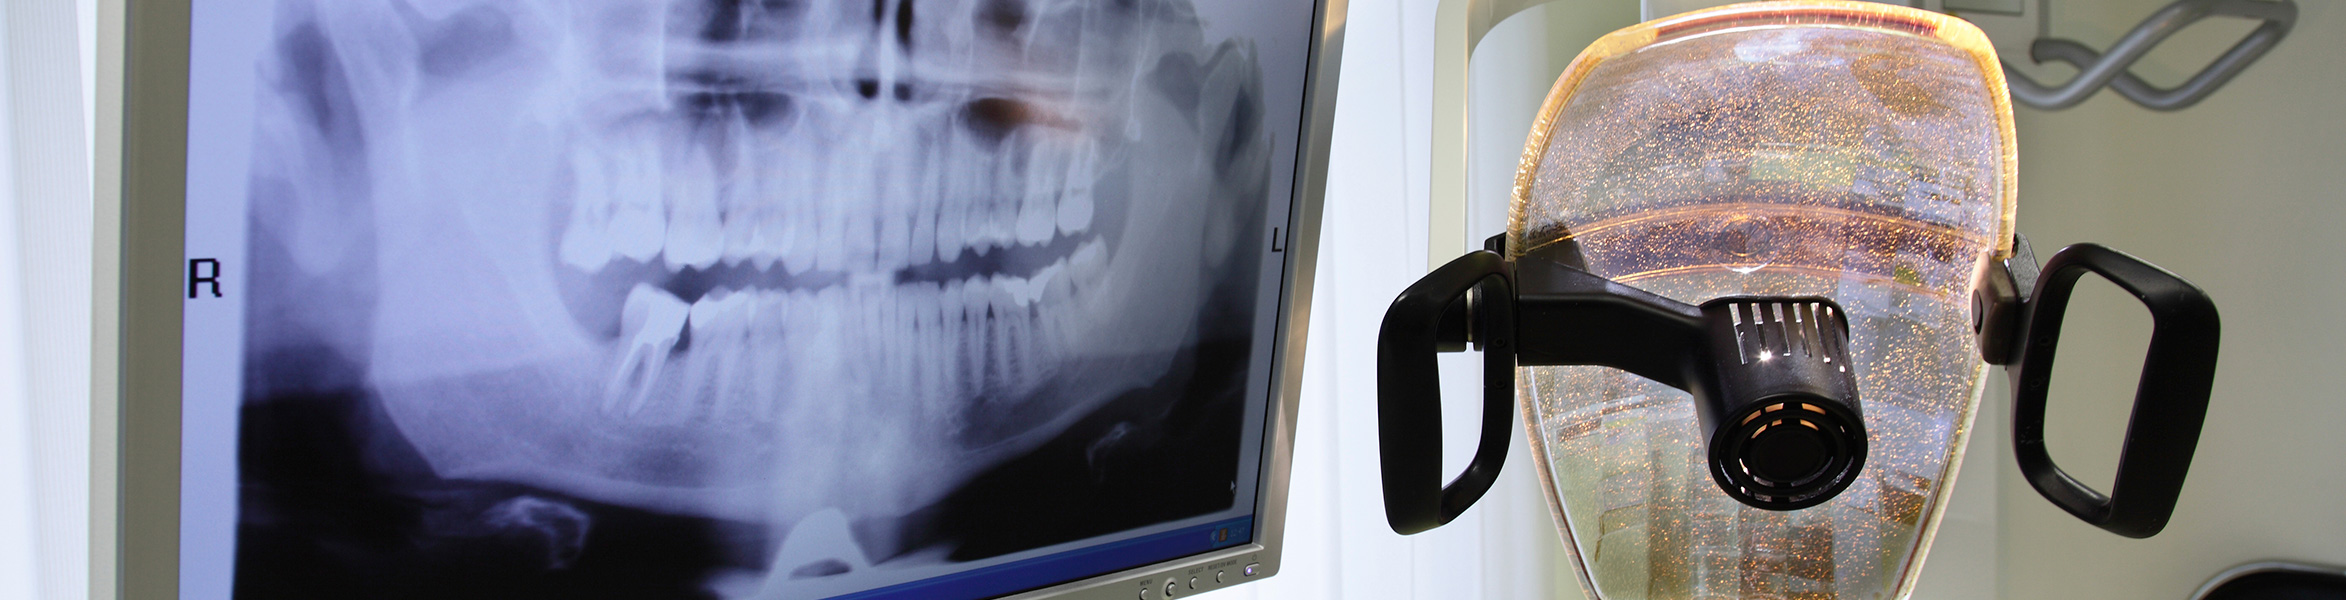 Imagen de cabecera sobre el tratamiento de odontología conservadora en la clínica dental Andoni Guisasola